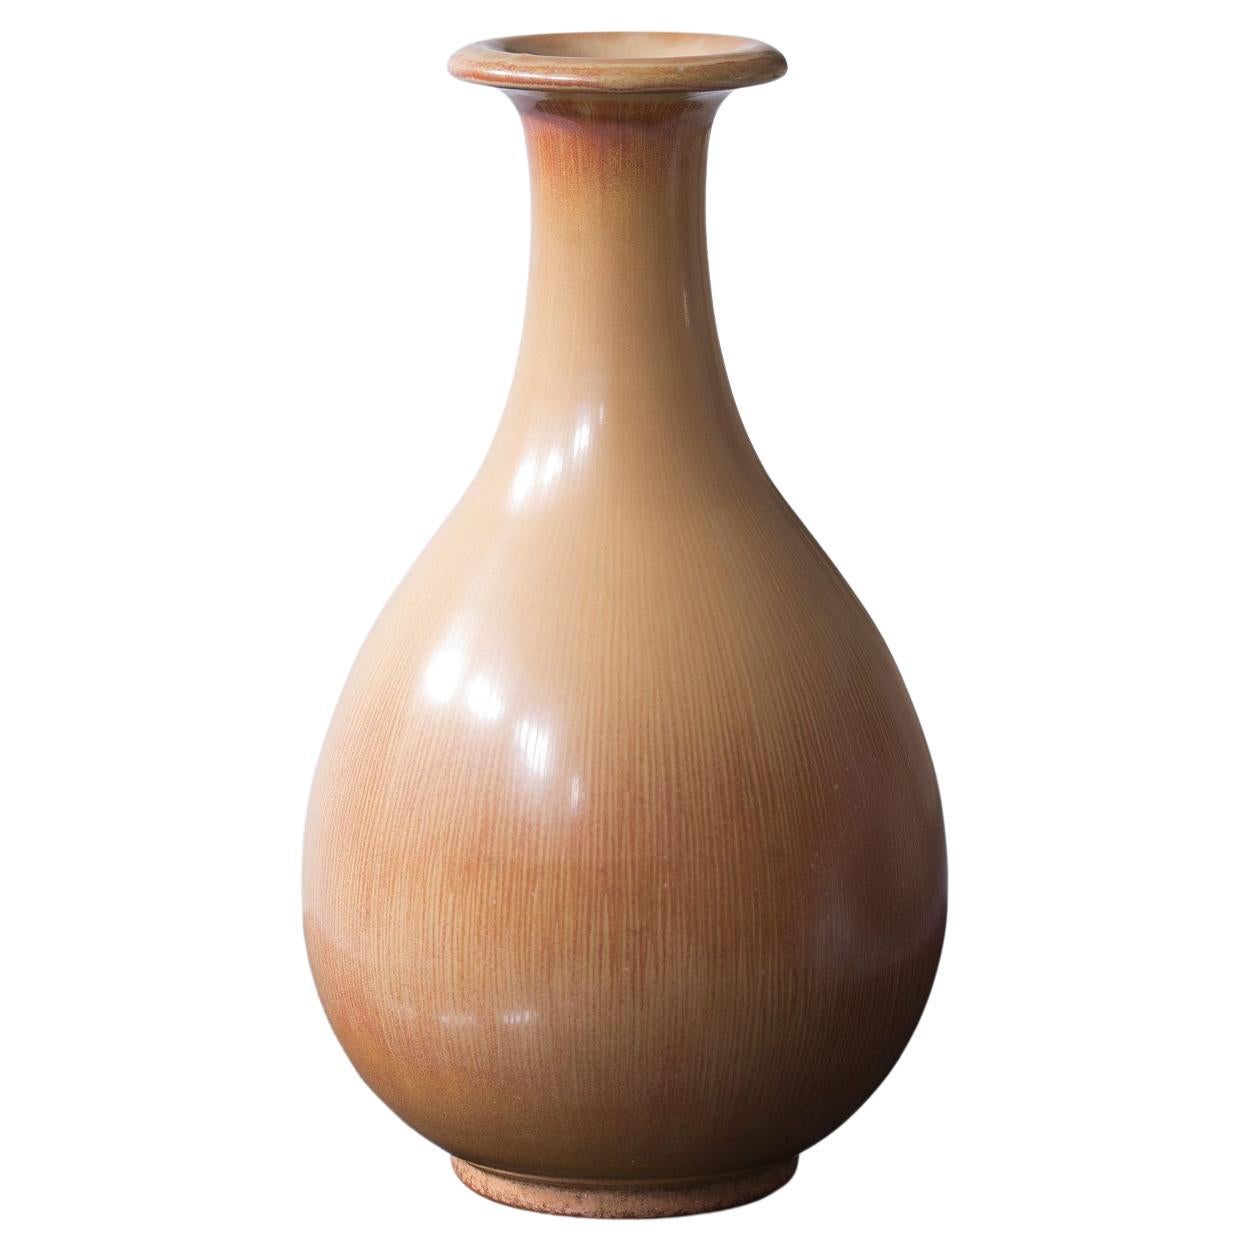 Scandinavian Modern 1940s Stoneware Vase by Gunnar Nylund, Sweden